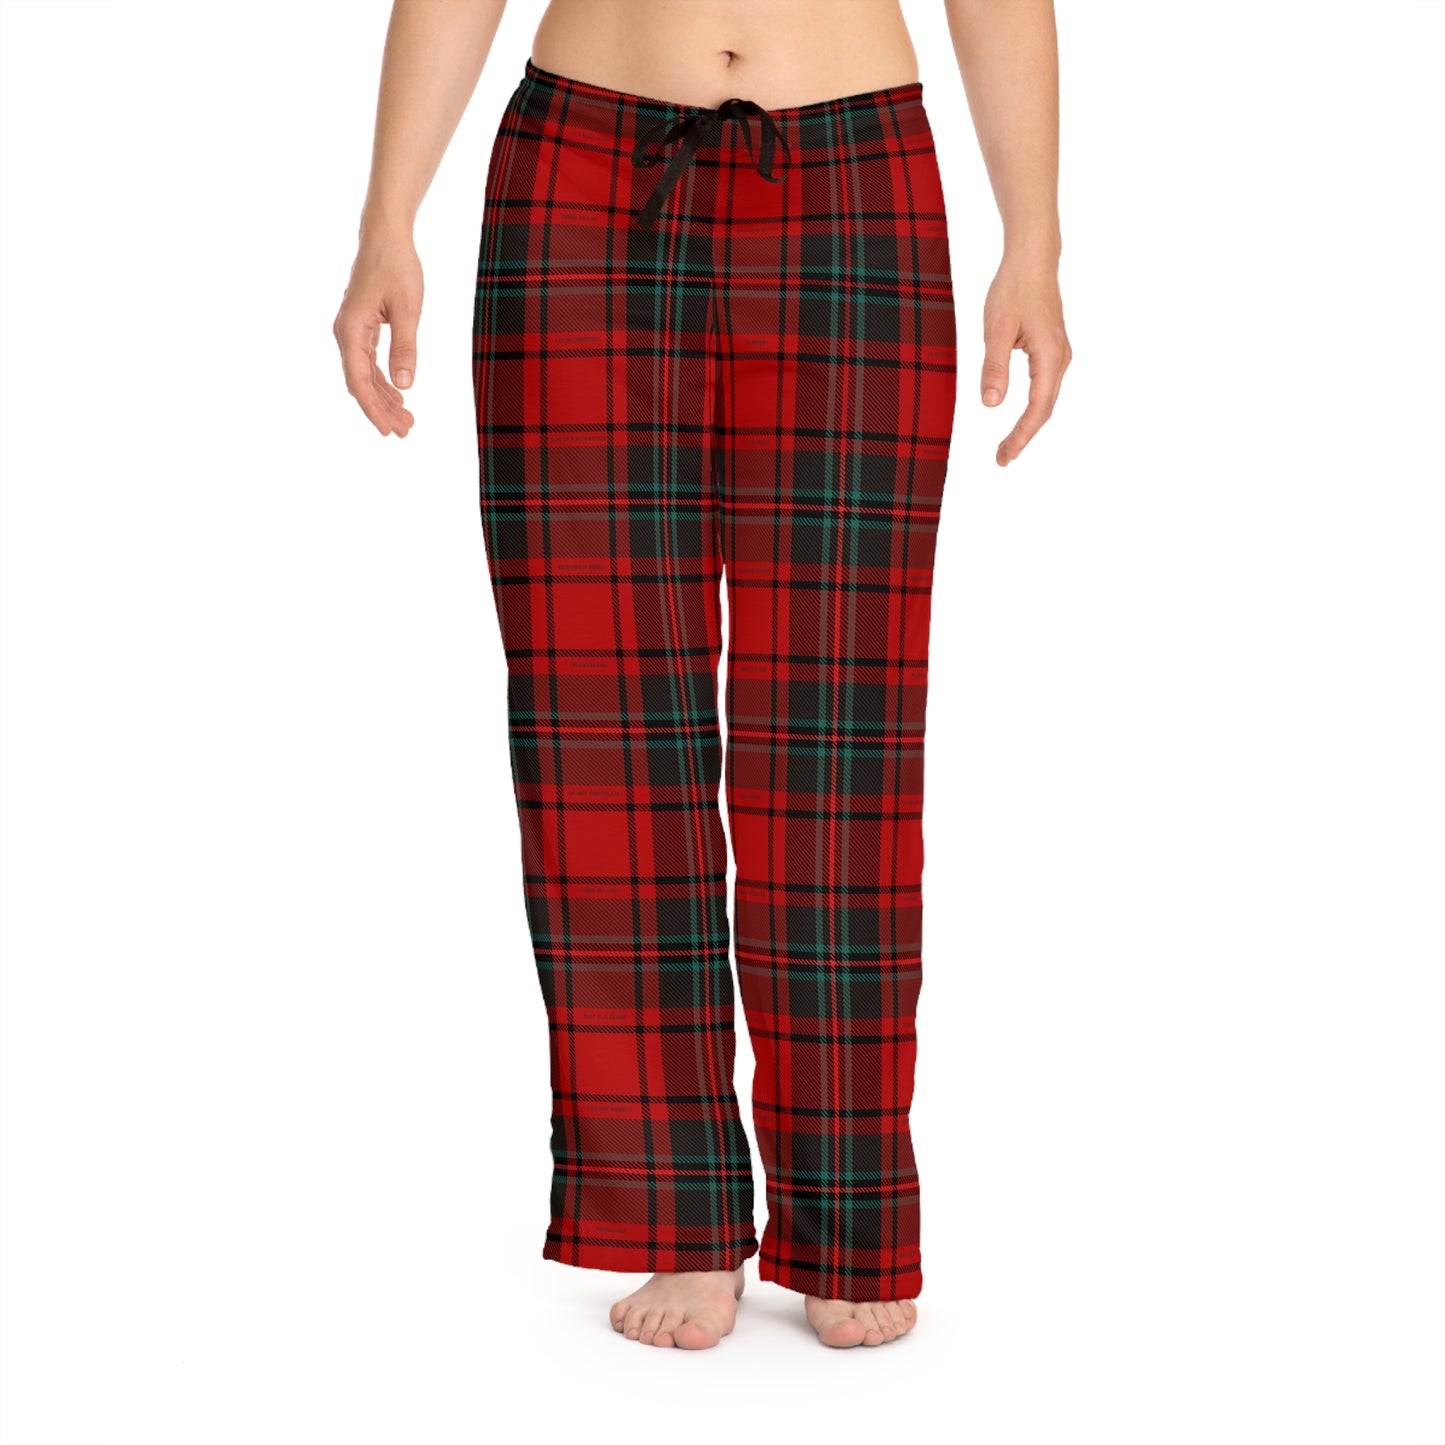 Merry Movies Plaid - Women's Pajama Pants